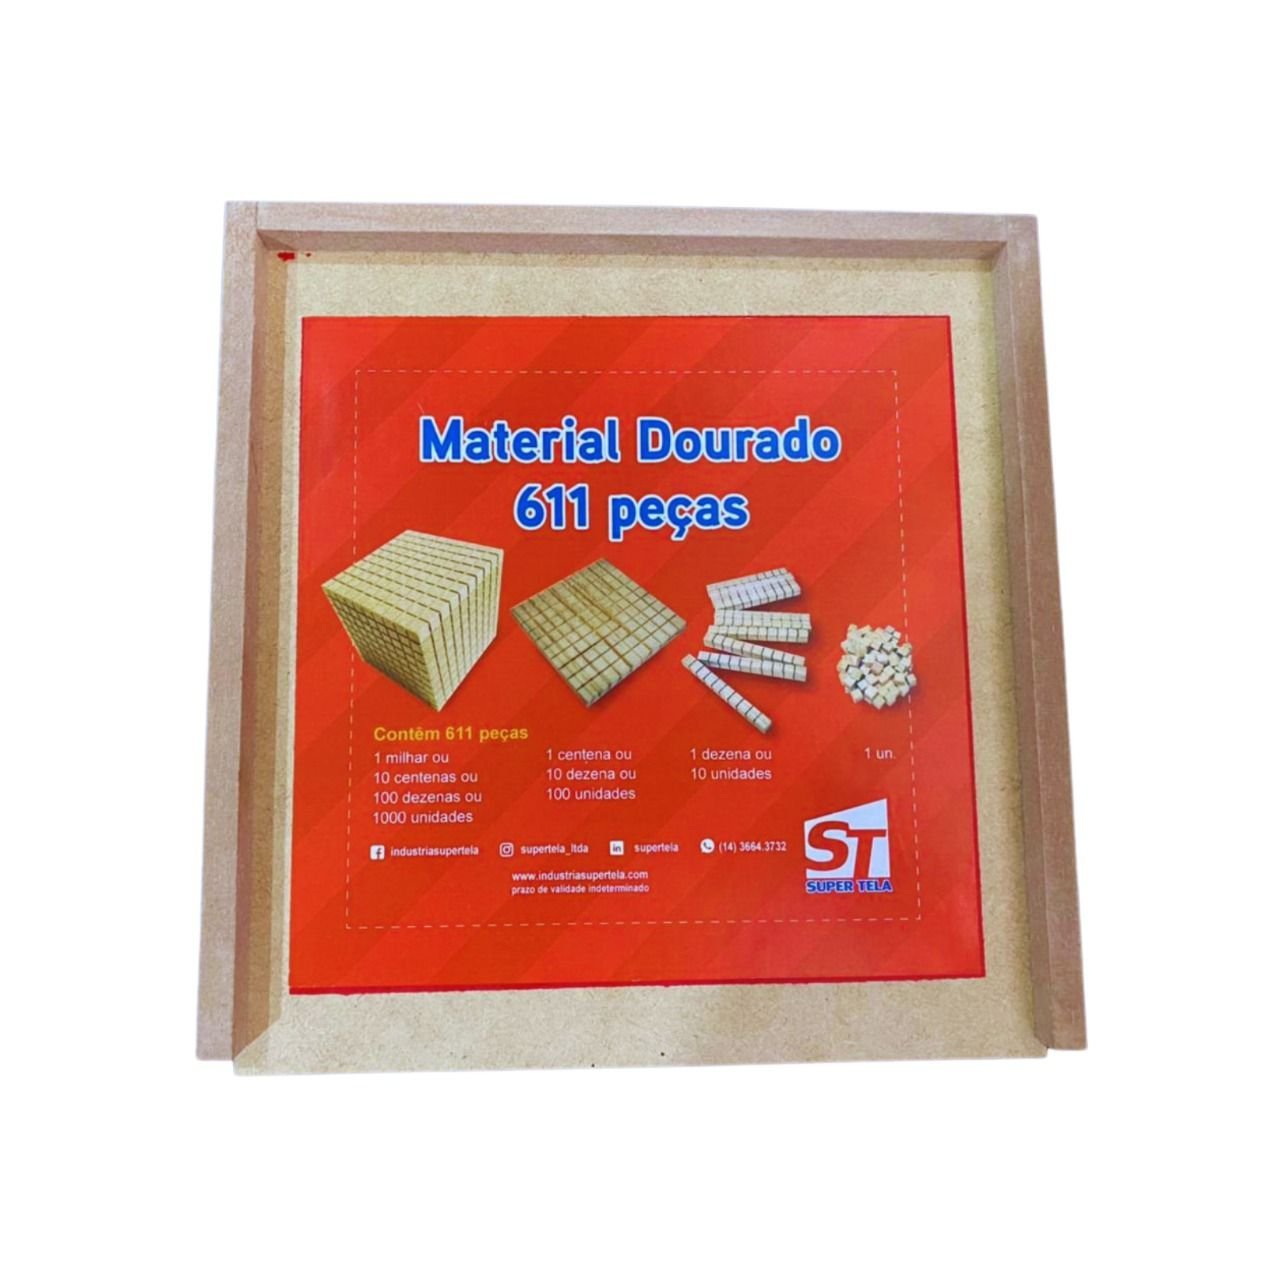 Material Dourado Professor/ Caixa de Madeira - 1 Unidade